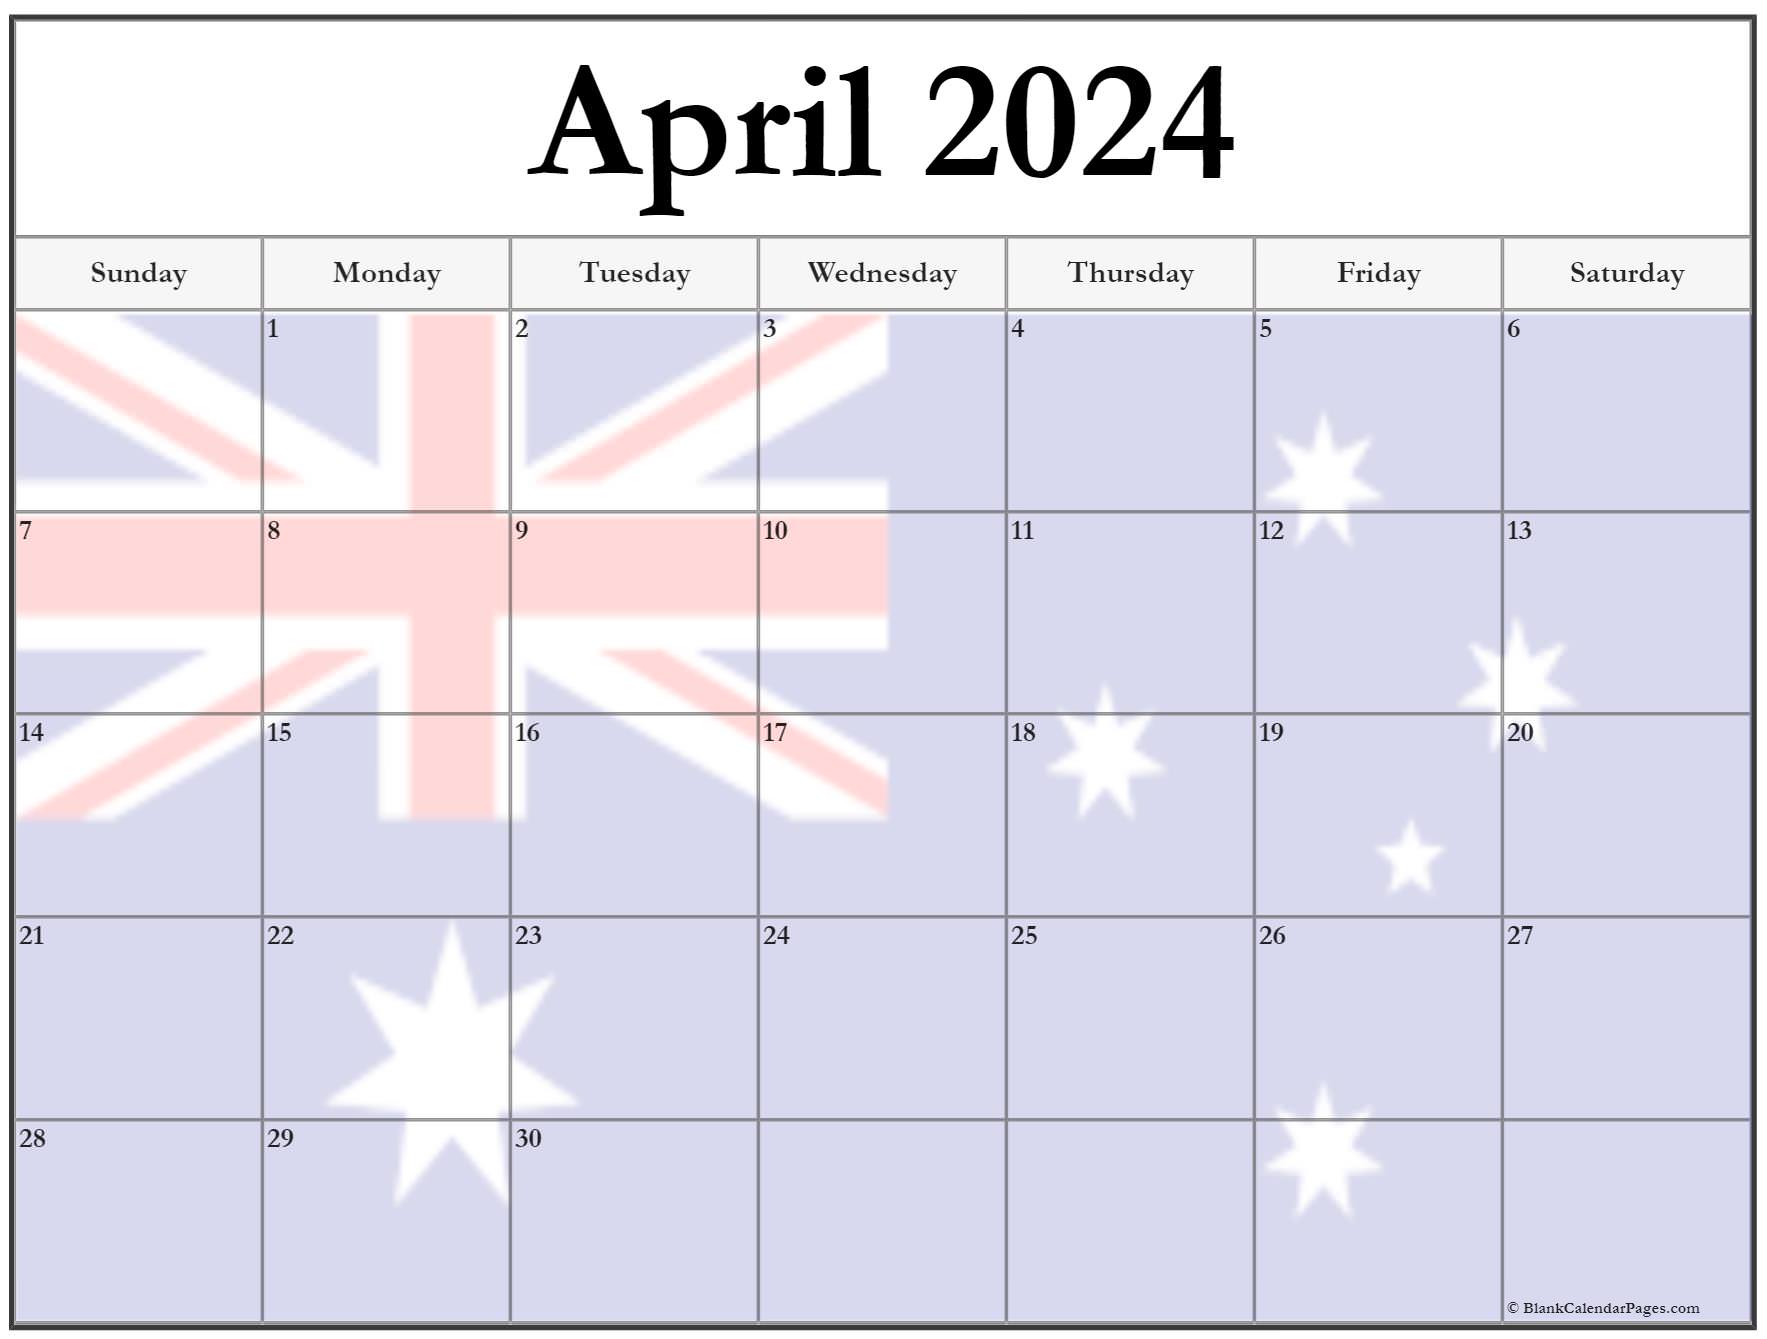 Free 2023 Calendar Australia Calendar 2023 With Federal Holidays